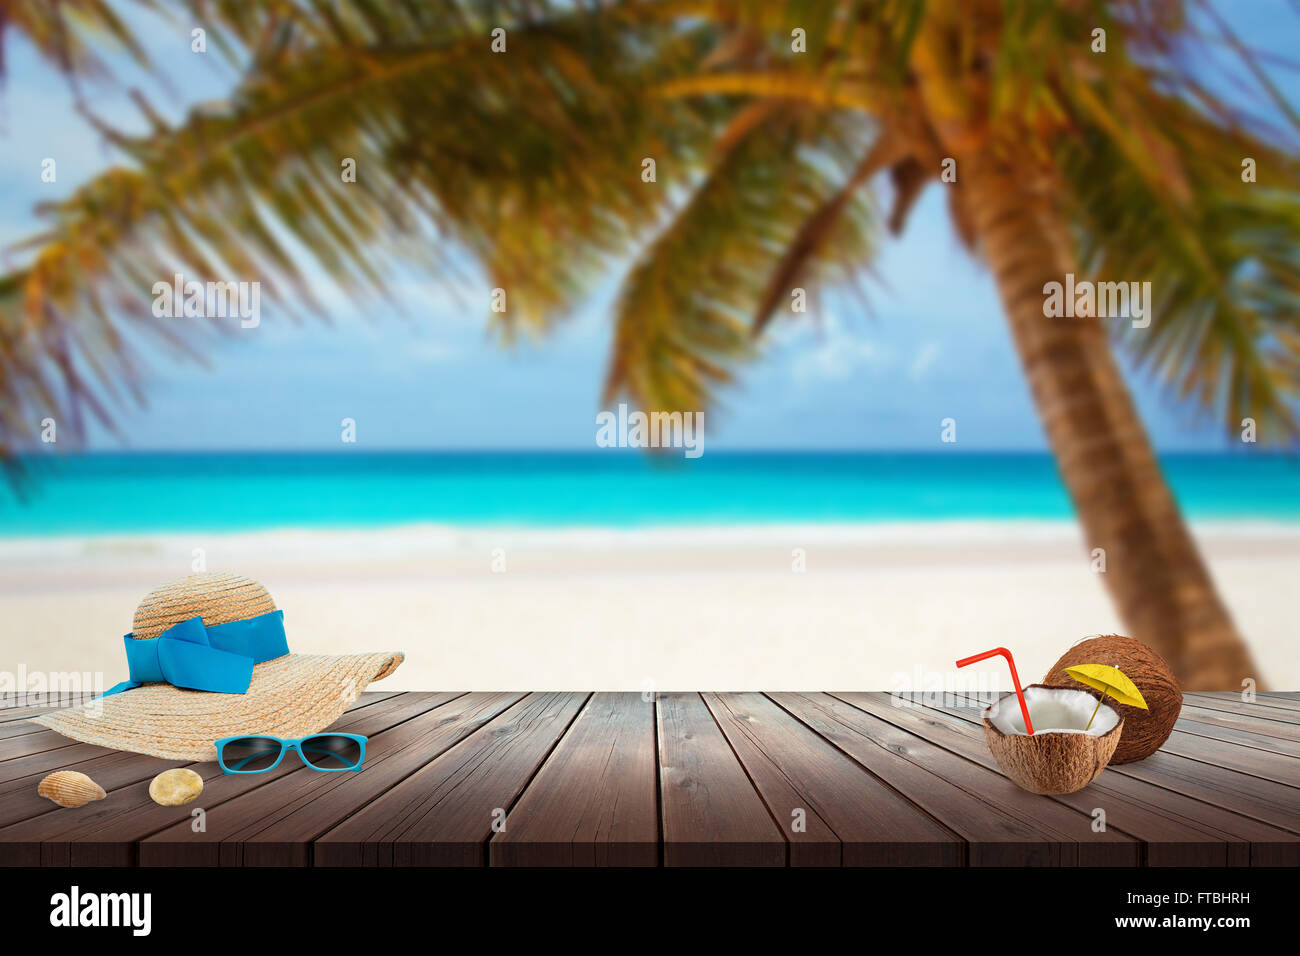 Cappello, occhiali da sole, noce di cocco, shell sulla spiaggia tabella. Spazio libero per il testo. Spiaggia, mare, Palm e cielo blu in background. Foto Stock